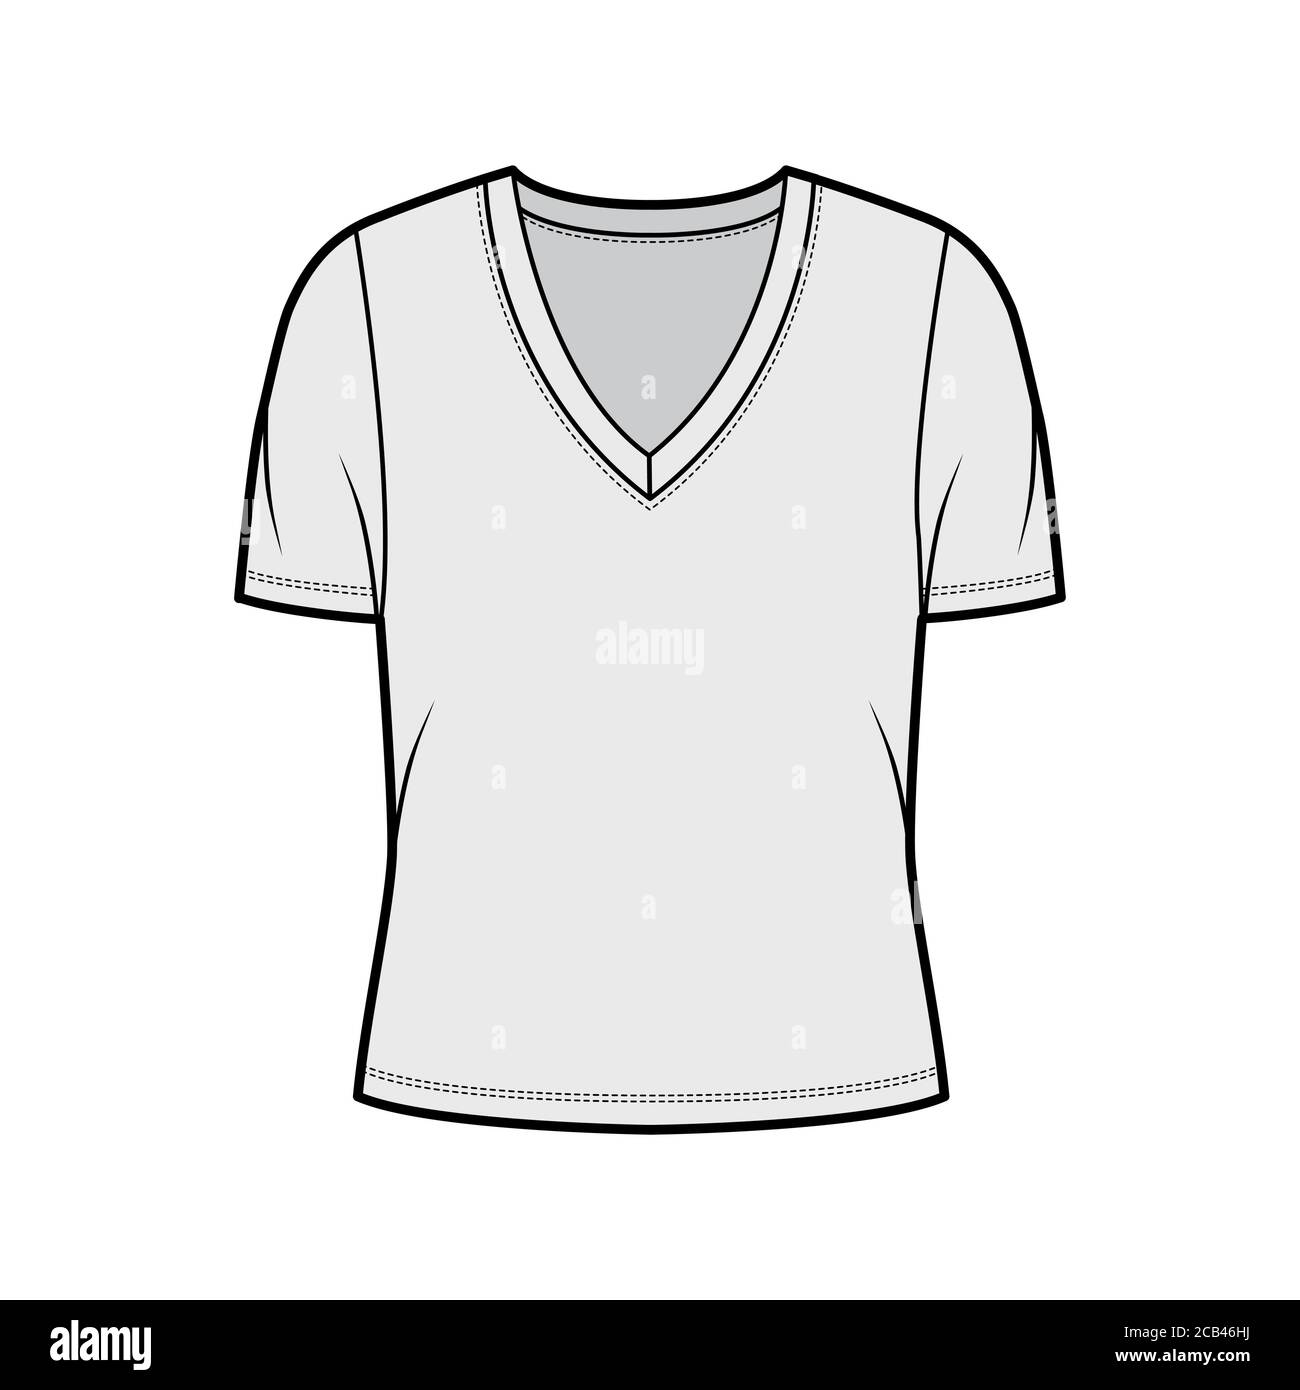 Camiseta de punto de escote pronunciado en pico ilustración técnica de moda con mangas cortas, cuerpo de gran Flat Top plantilla de ropa frontal, color gris. Mujeres, unisex traje